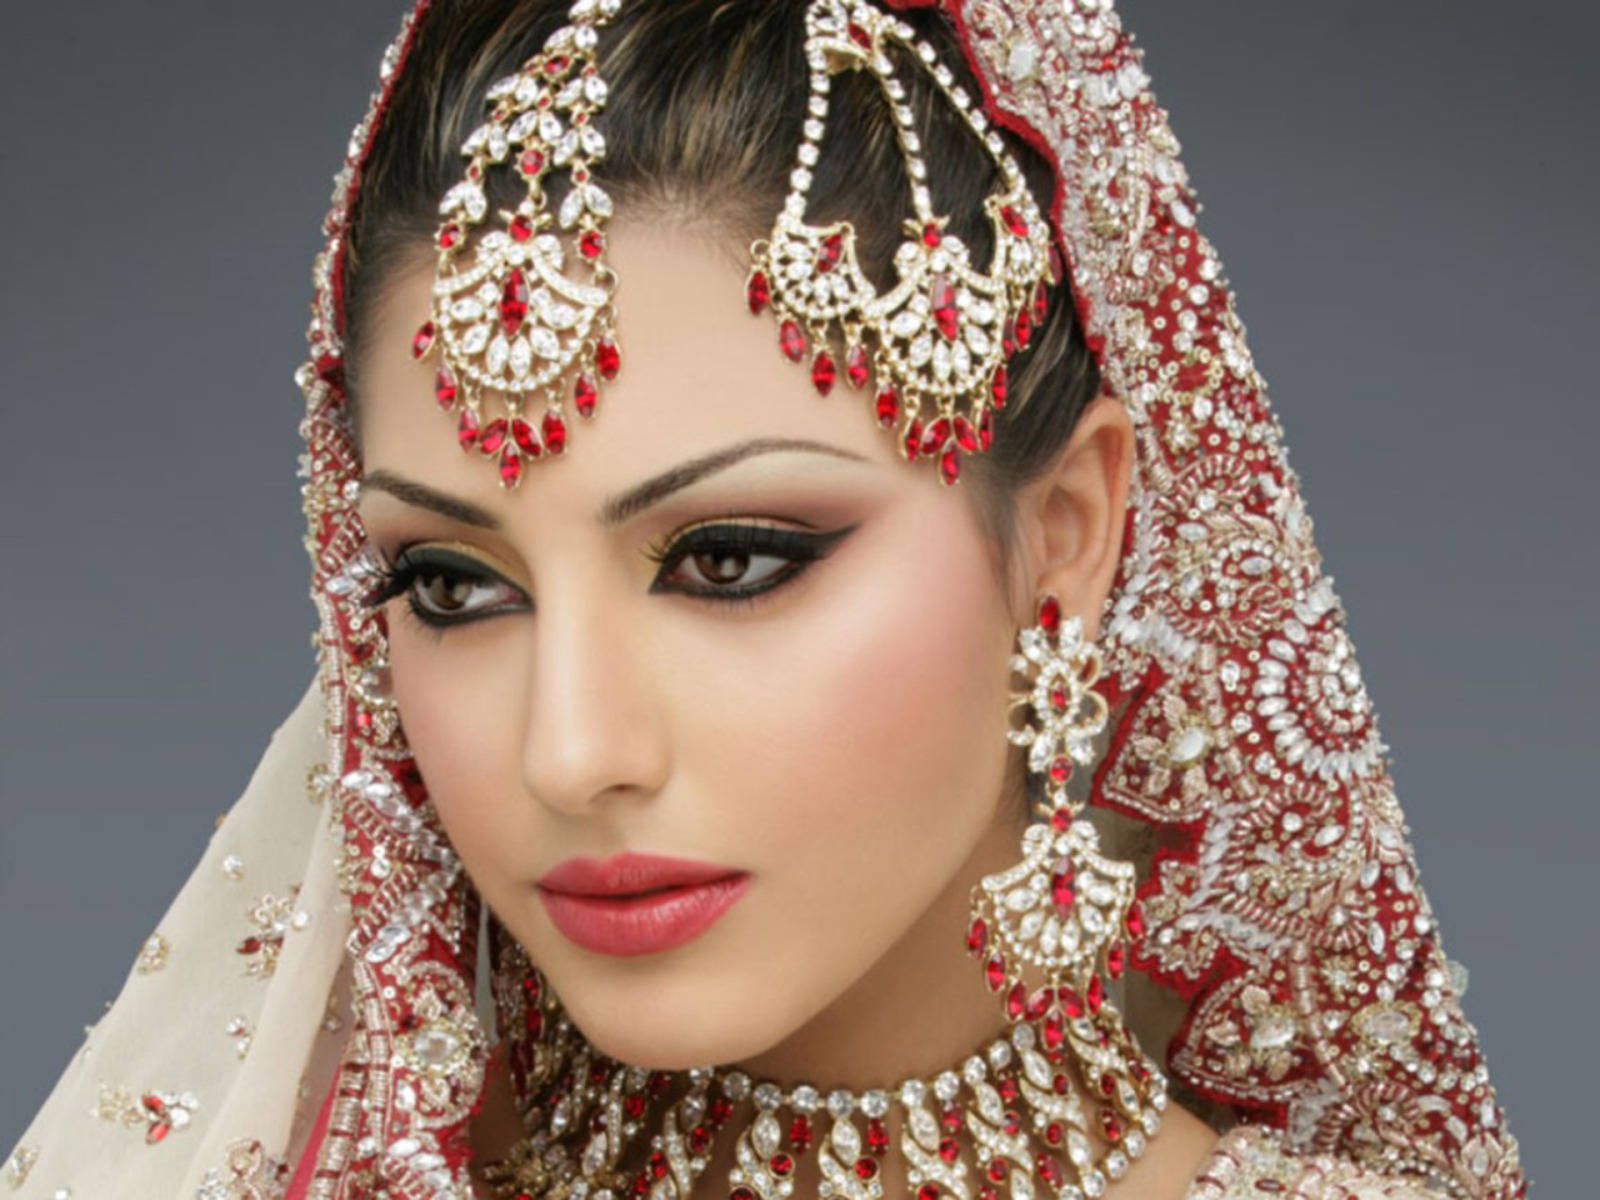 Caption: Radiant Bride In Elegance Background